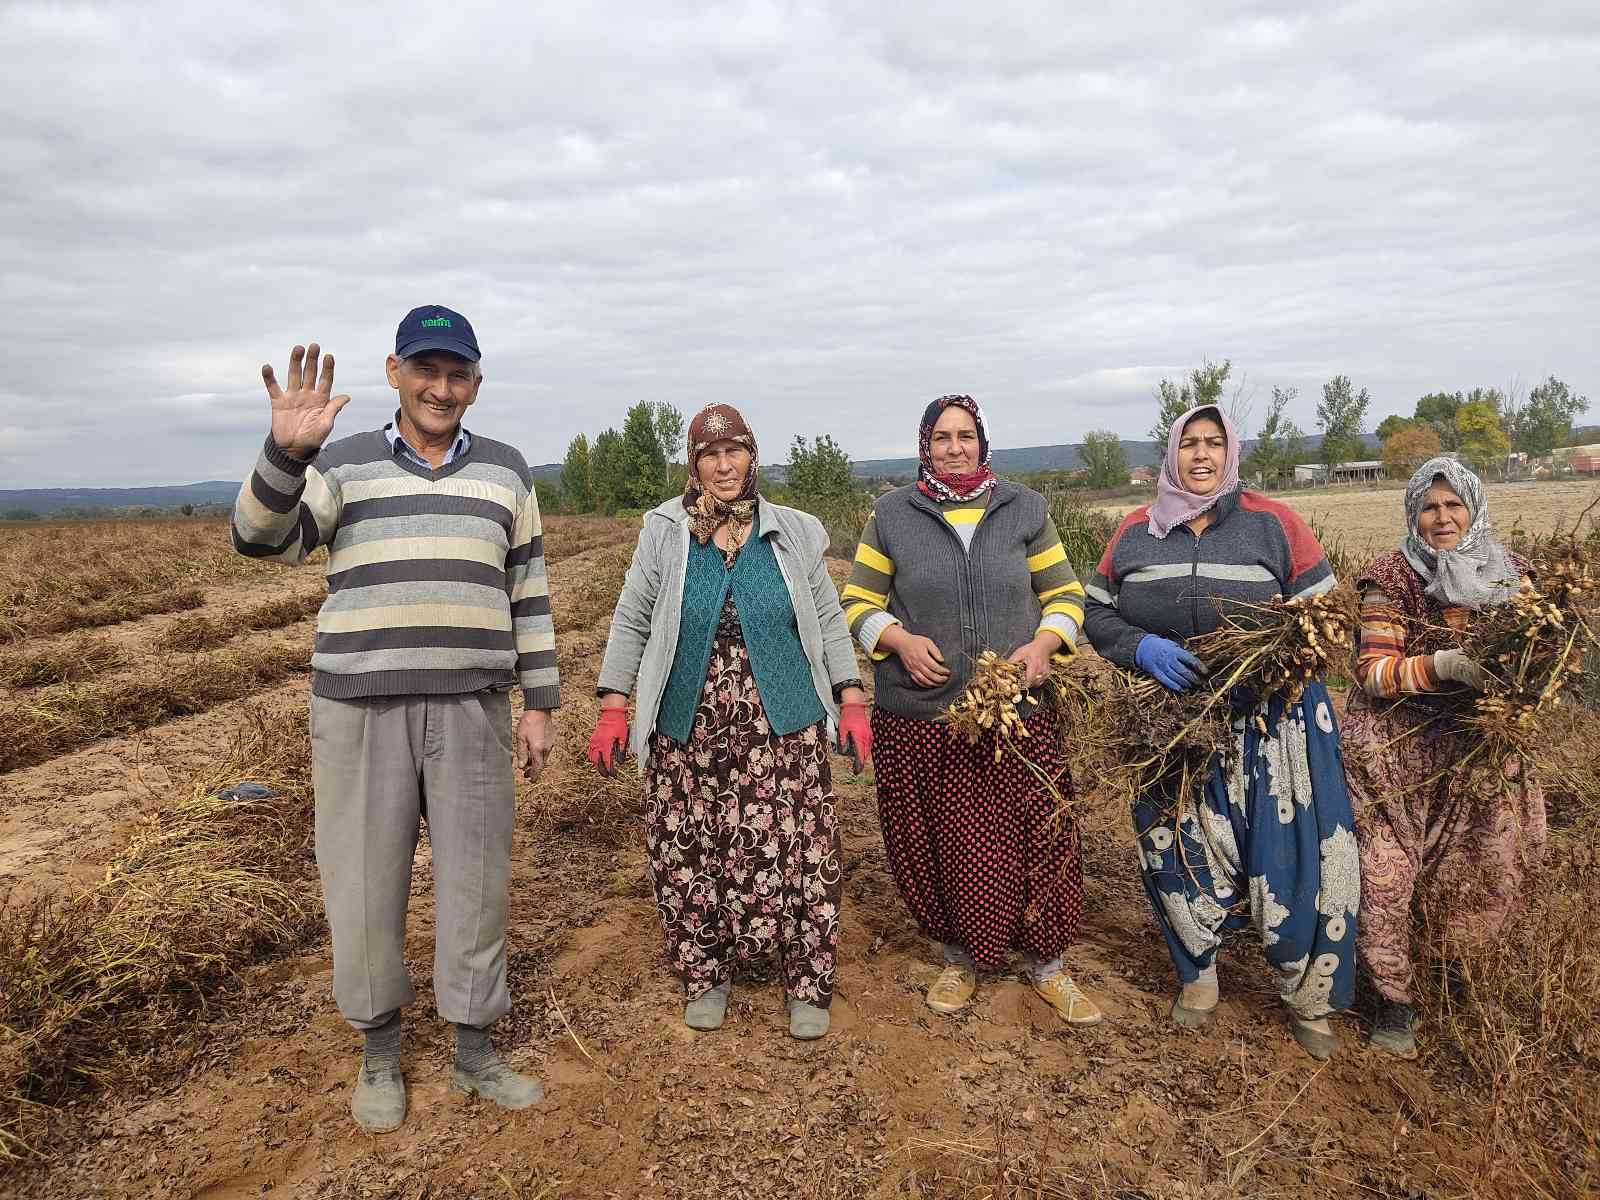 Edirne’de 120 yıldır ekilen fıstığın hasadına başlandı #edirne